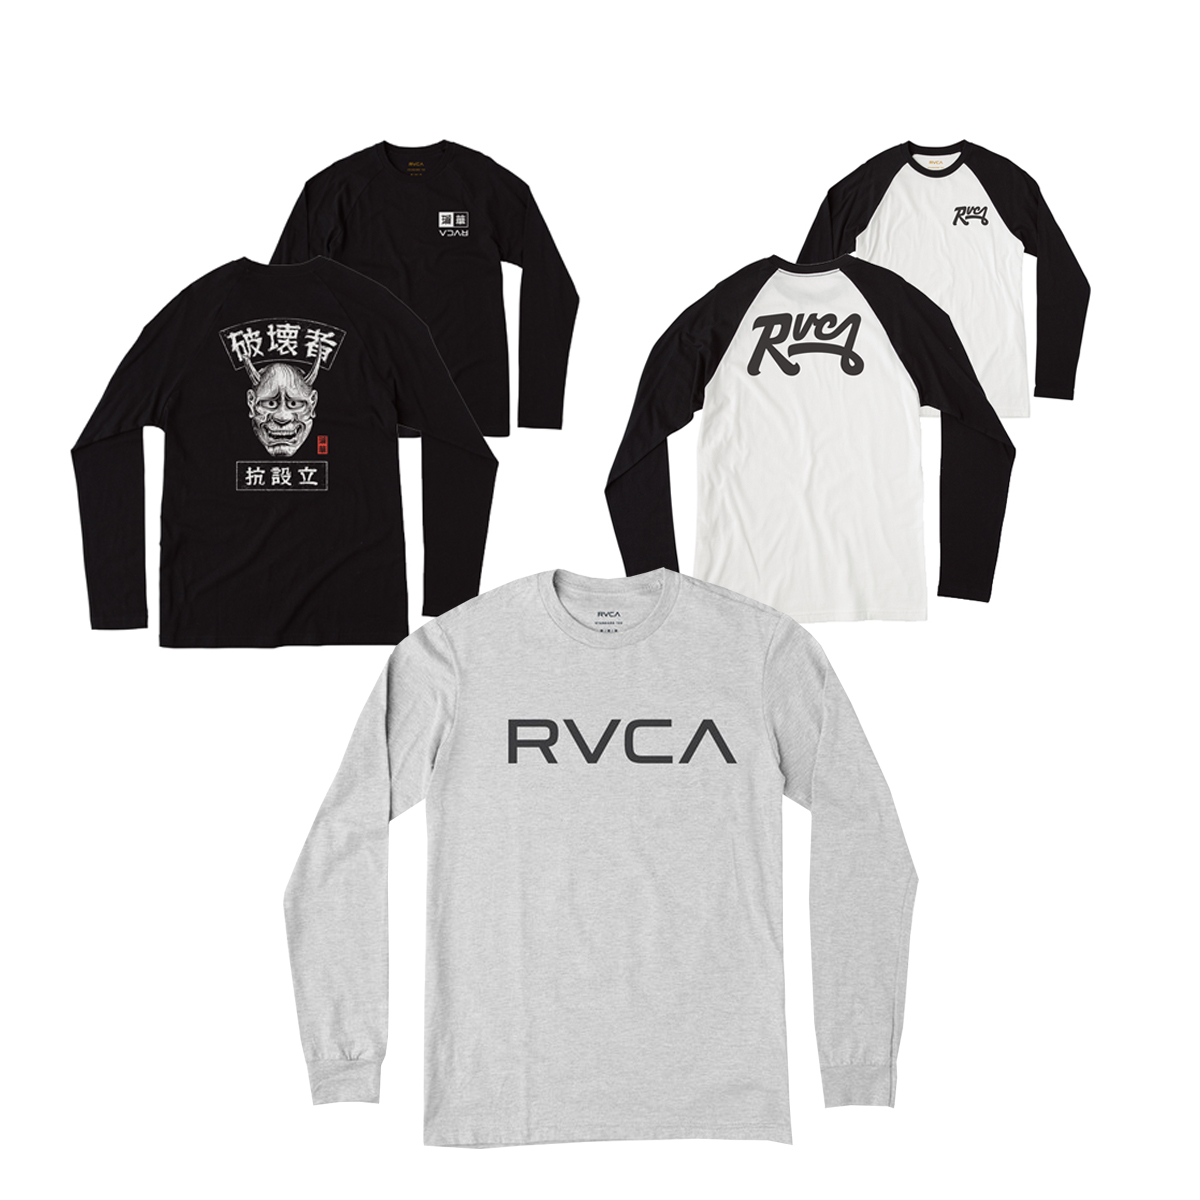 【創業25周年記念新春CP】「RVCA」ロングスリーブTシャツ 各色1名 合計3名様 - 波伝説 ニュース